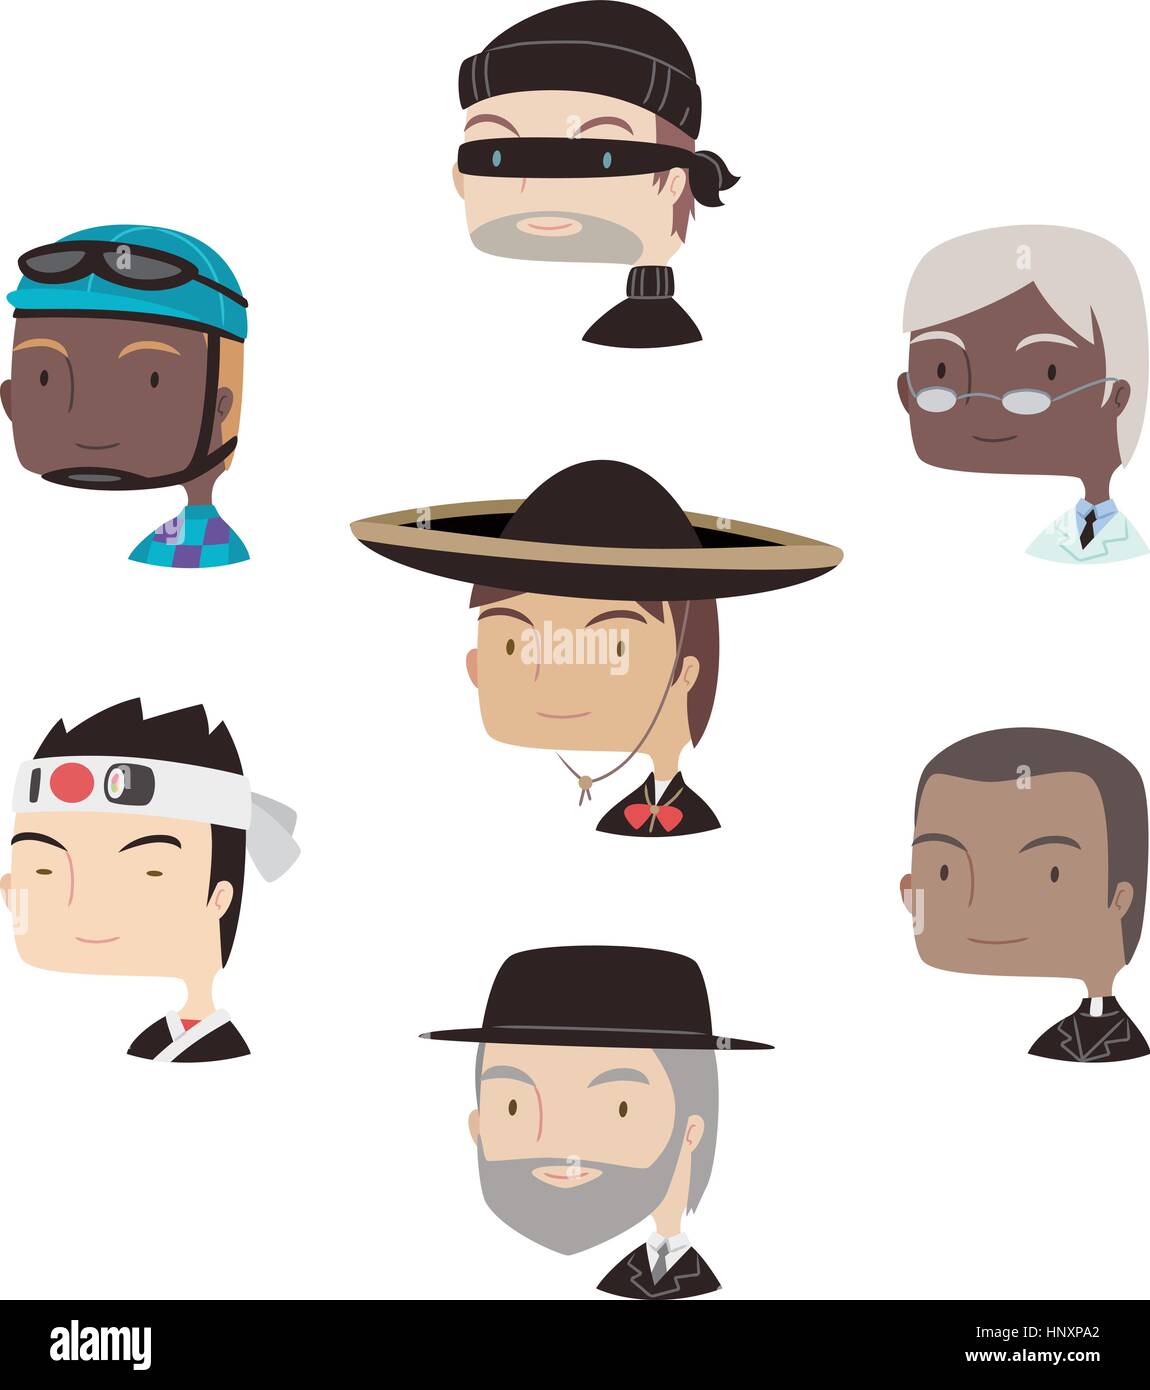 Testa e la spalla Professional Avatar caratteri speciali profilo, con il cantante, Cook, Chef, biker, ladro, jokey, studioso messicano, mariachi, sacerdote, ra Illustrazione Vettoriale